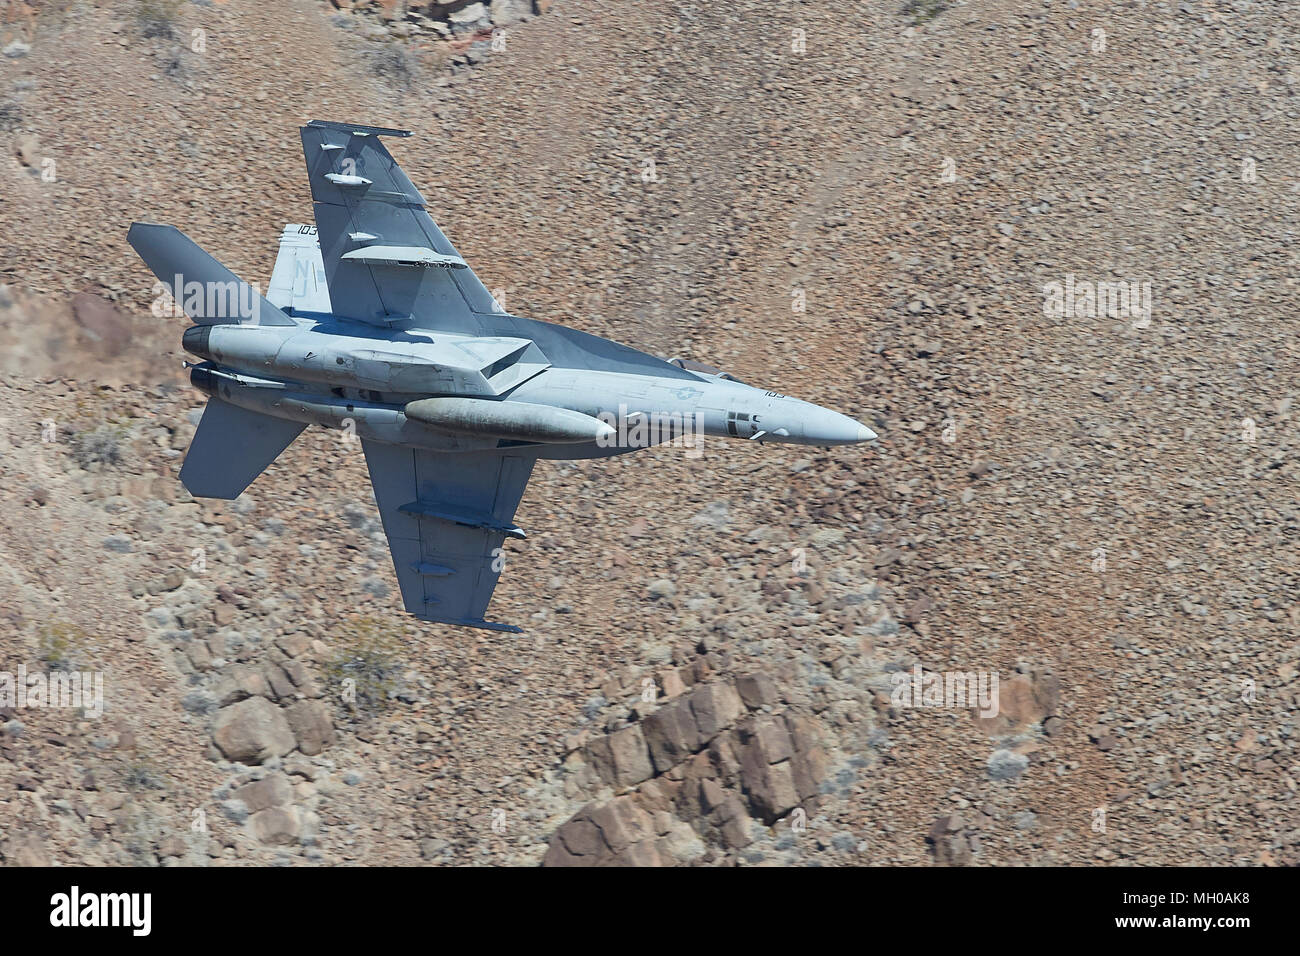 Profil anzeigen von United States Navy F/A-18F Super Hornet Jet Fighter Banking und Flying Low durch Rainbow Canyon, Kalifornien, USA. Stockfoto